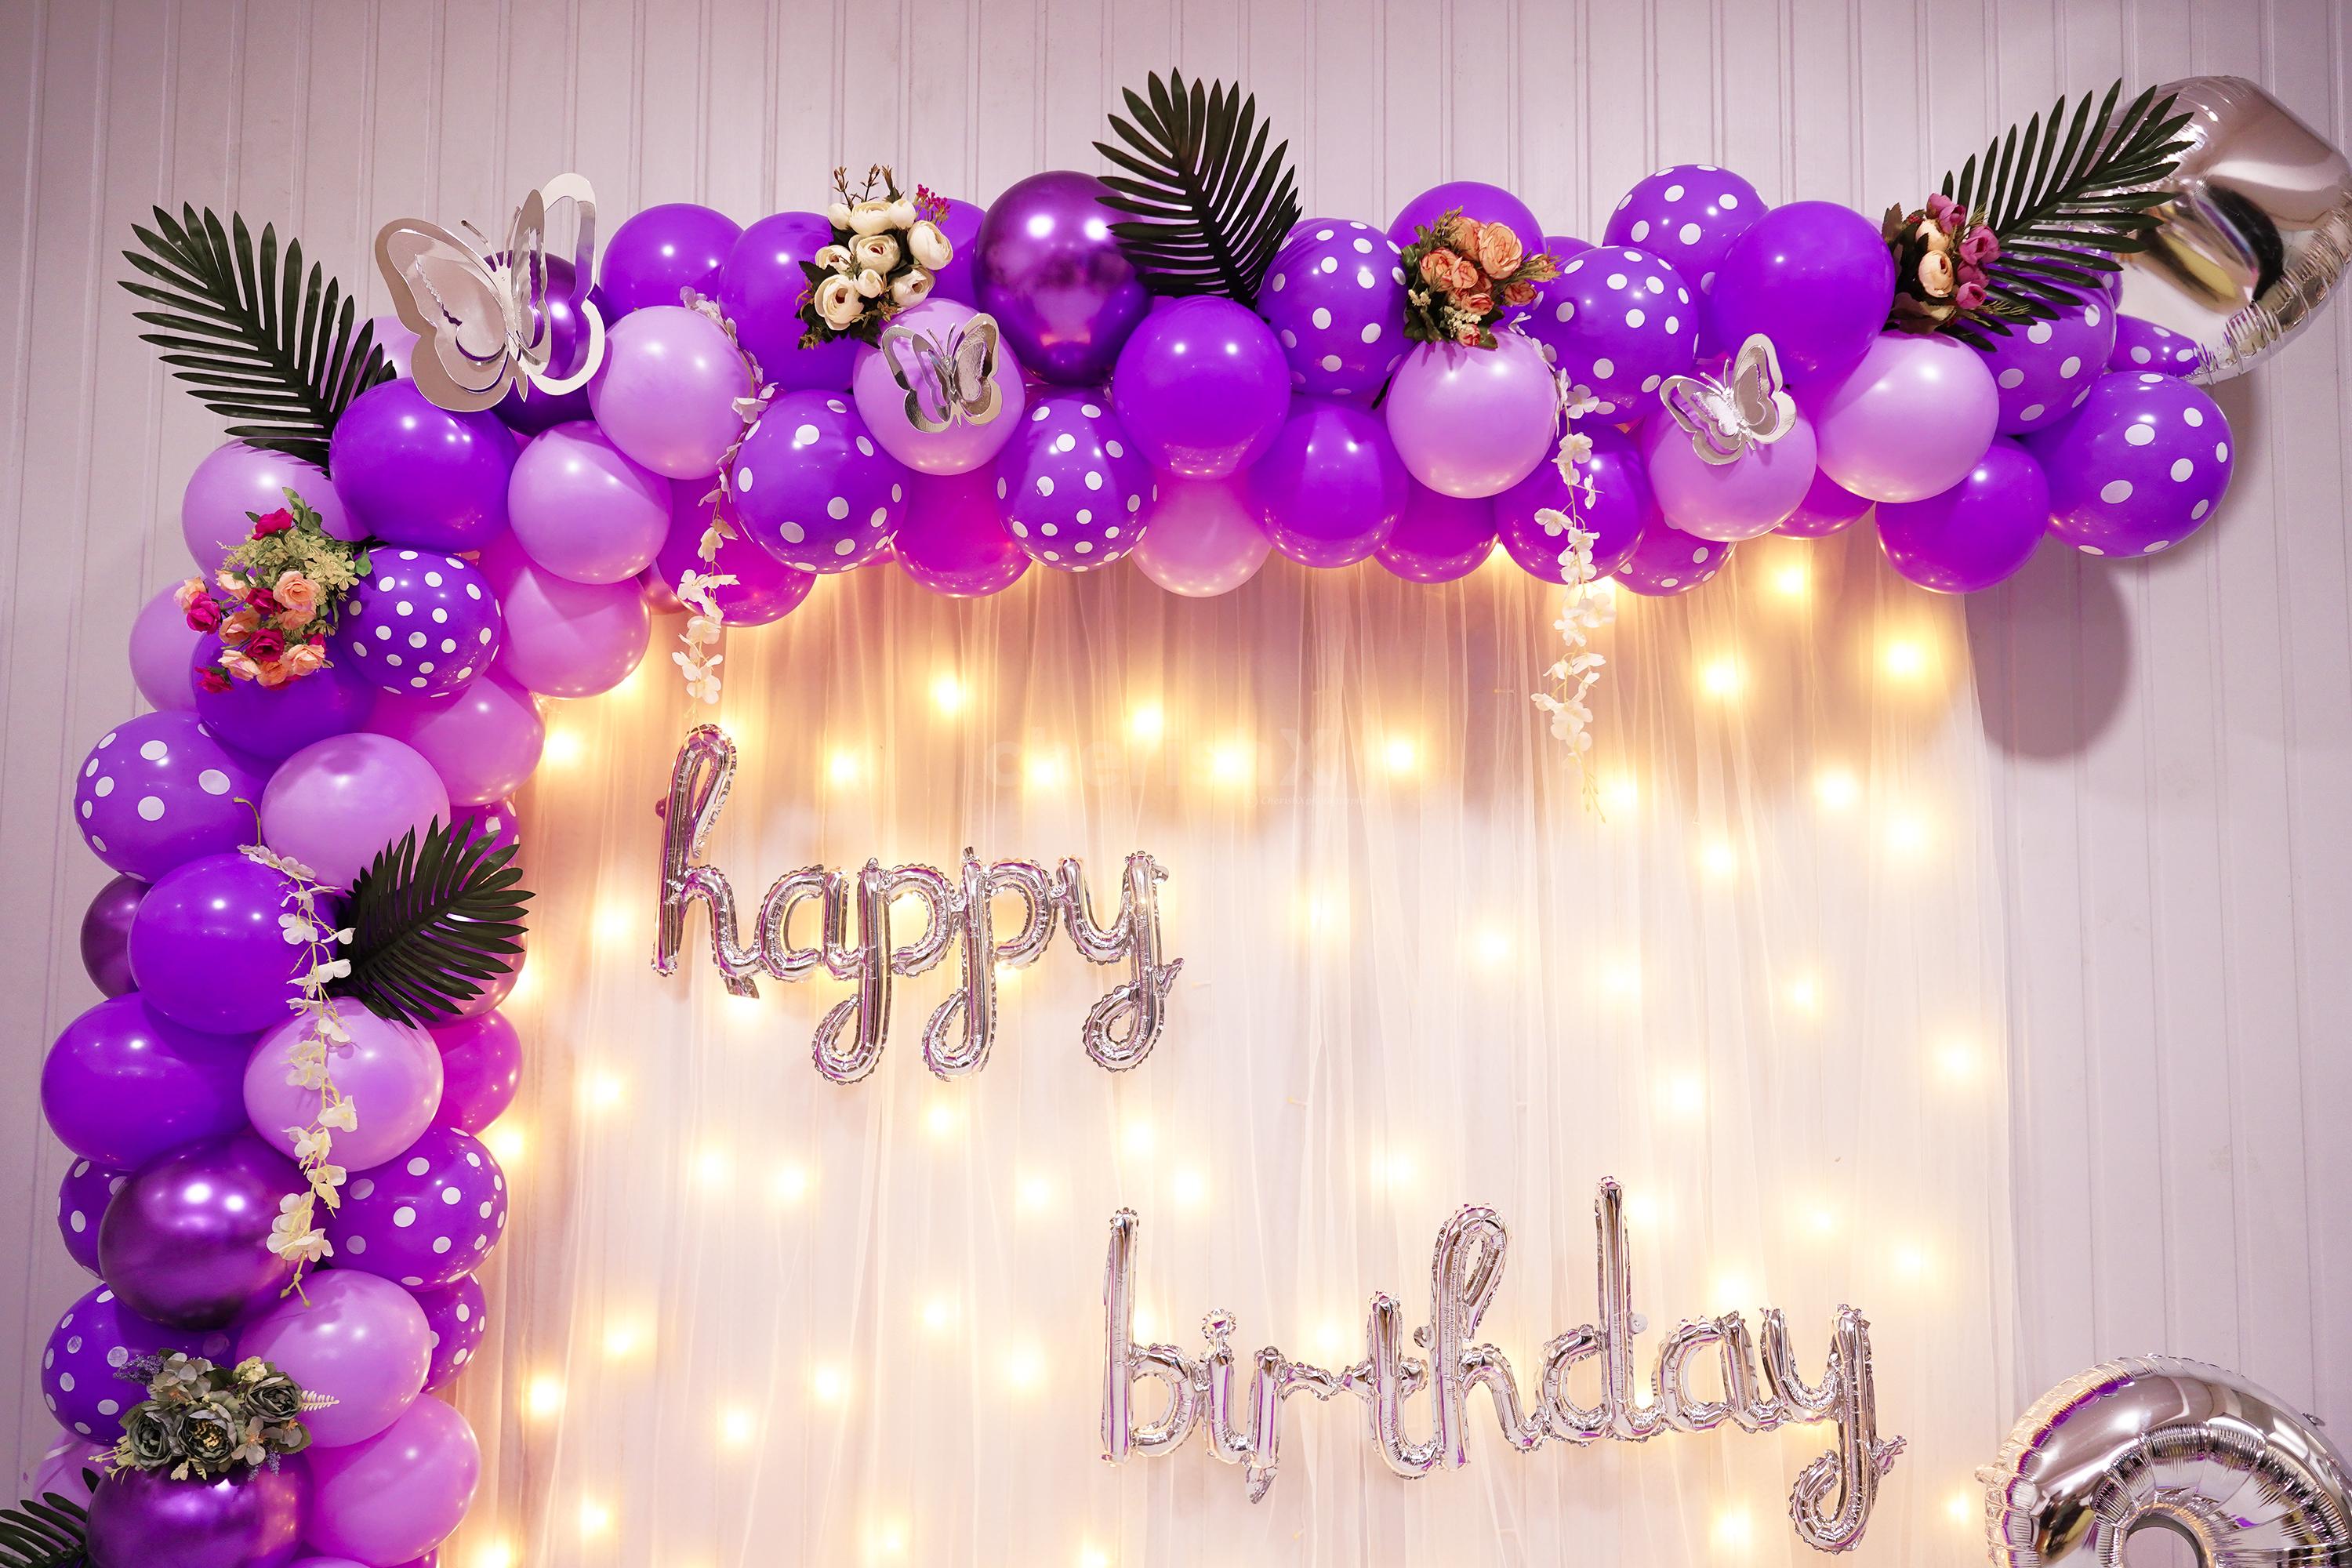 décoration anniversaire surprise violet